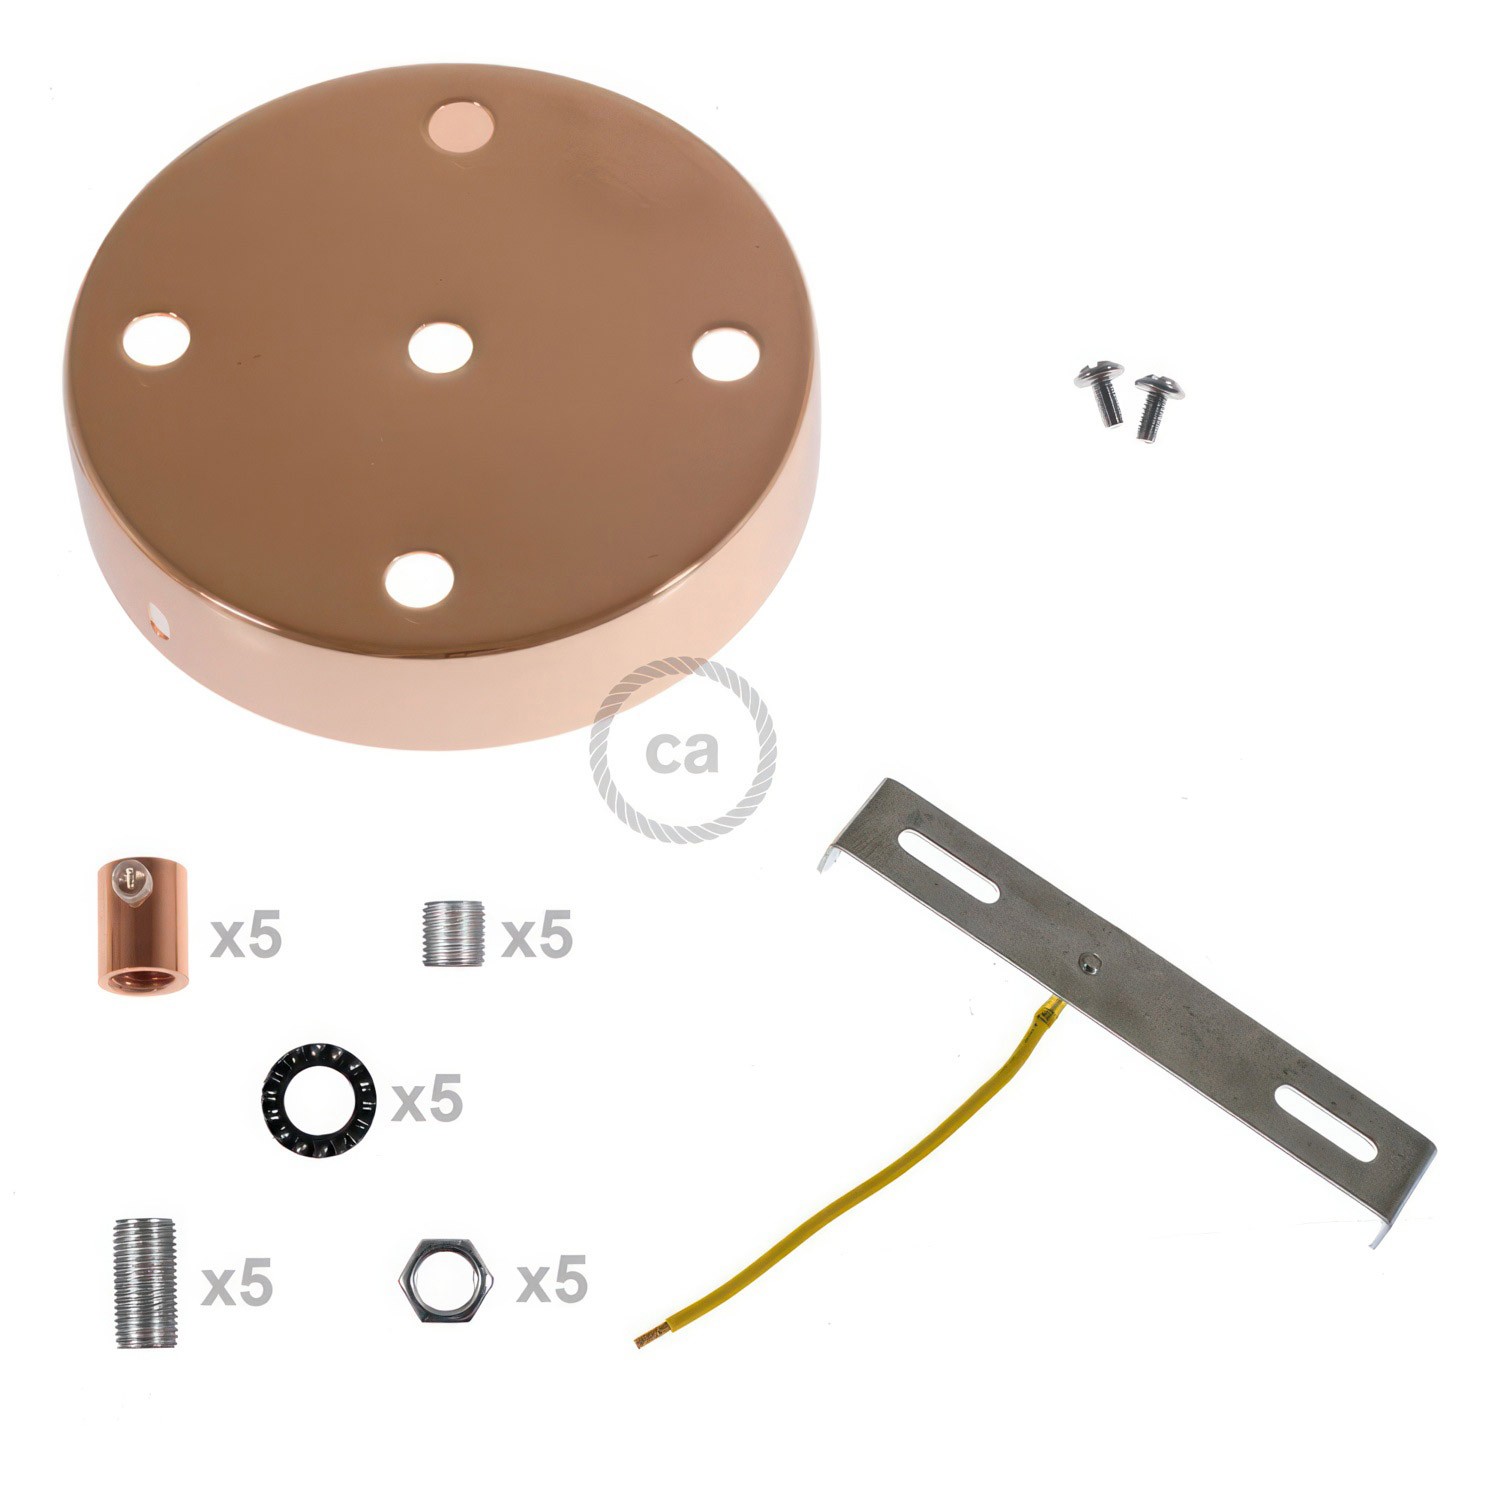 Zylindrischer 5-Loch-Lampenbaldachin Kit aus Metall